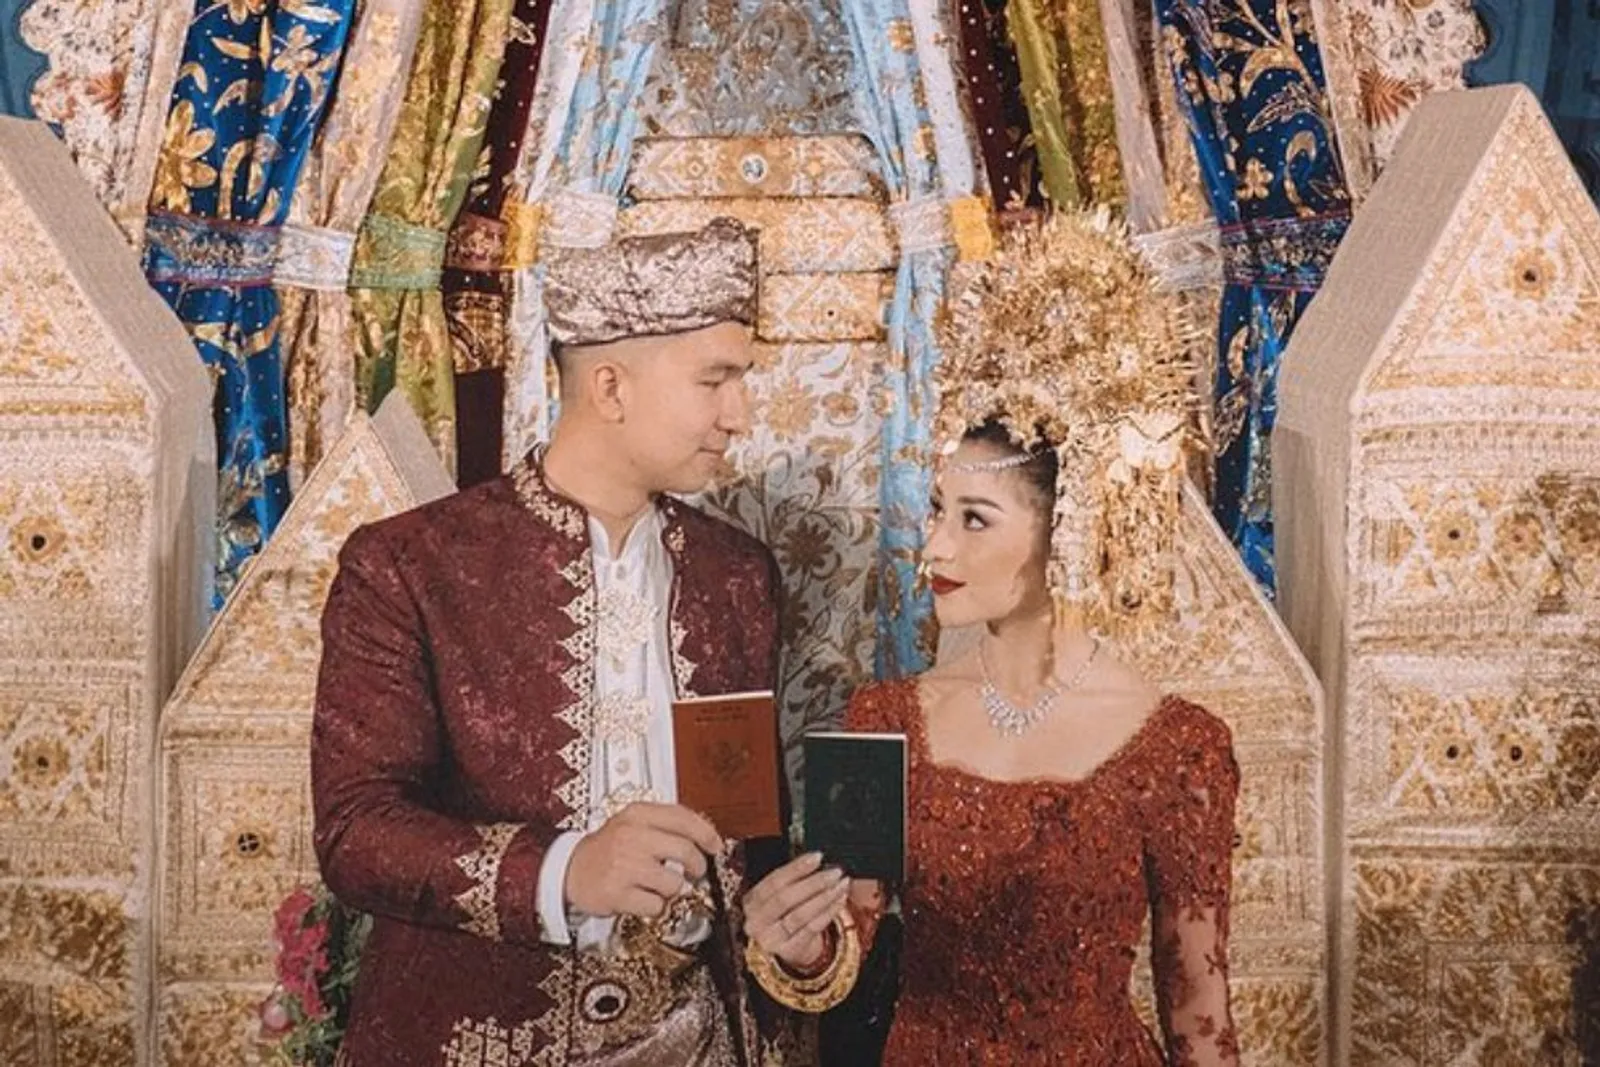 Pakai Adat Minang, Begini Hangatnya Penampilan Para Artis Saat Menikah